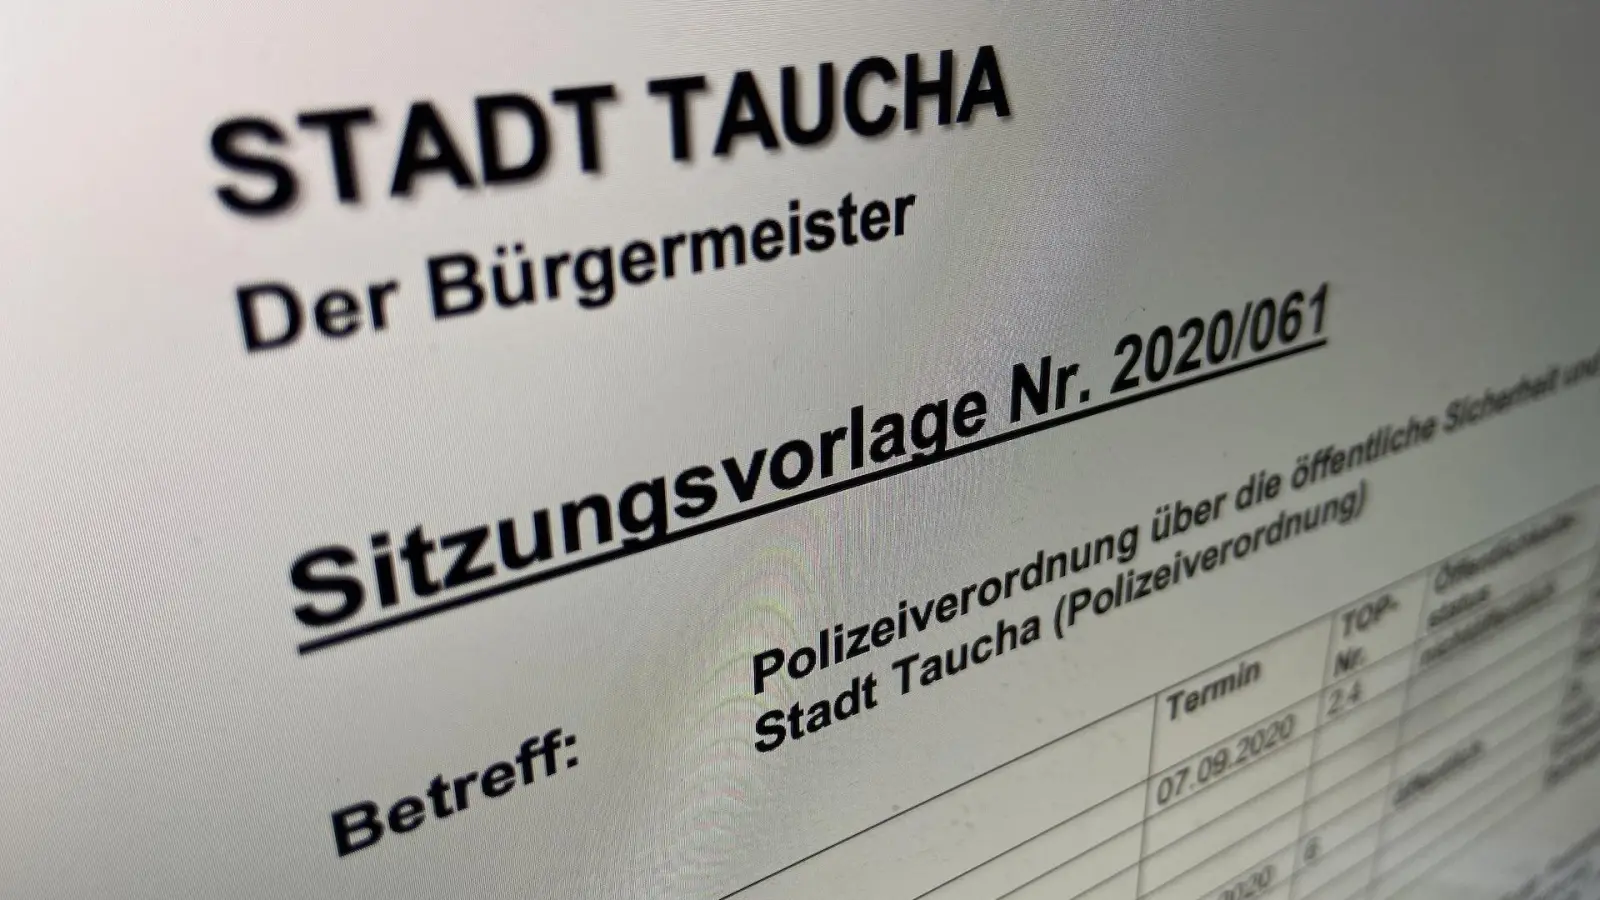 Stadtrat am Donnerstag mit interessanten Änderungen bei Polizeiverordnung (Foto: taucha-kompakt.de)